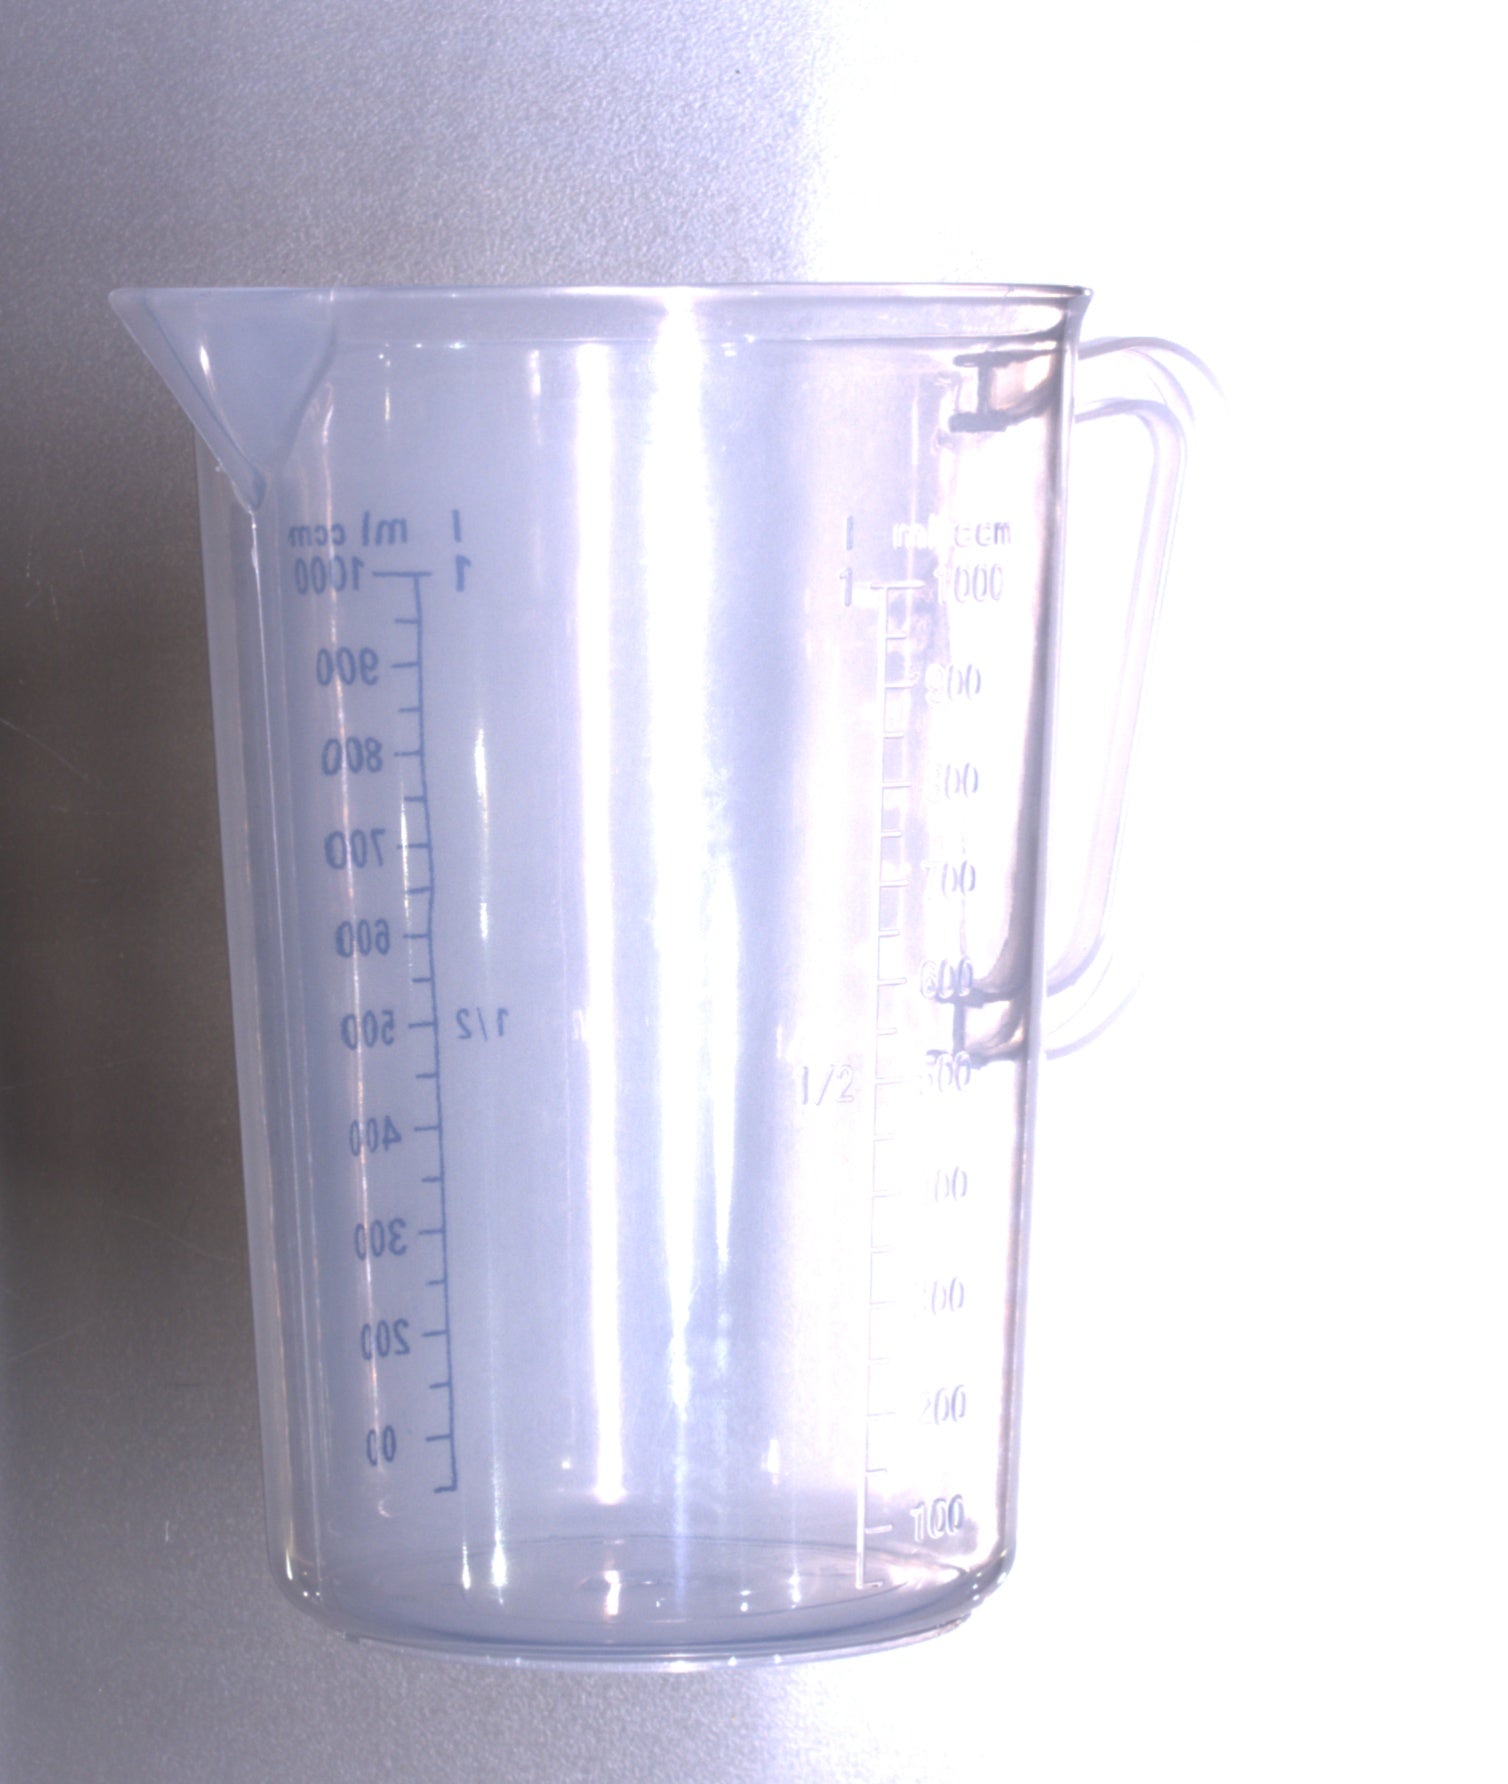 Målekopp - 1 liter - med 100 ml skala